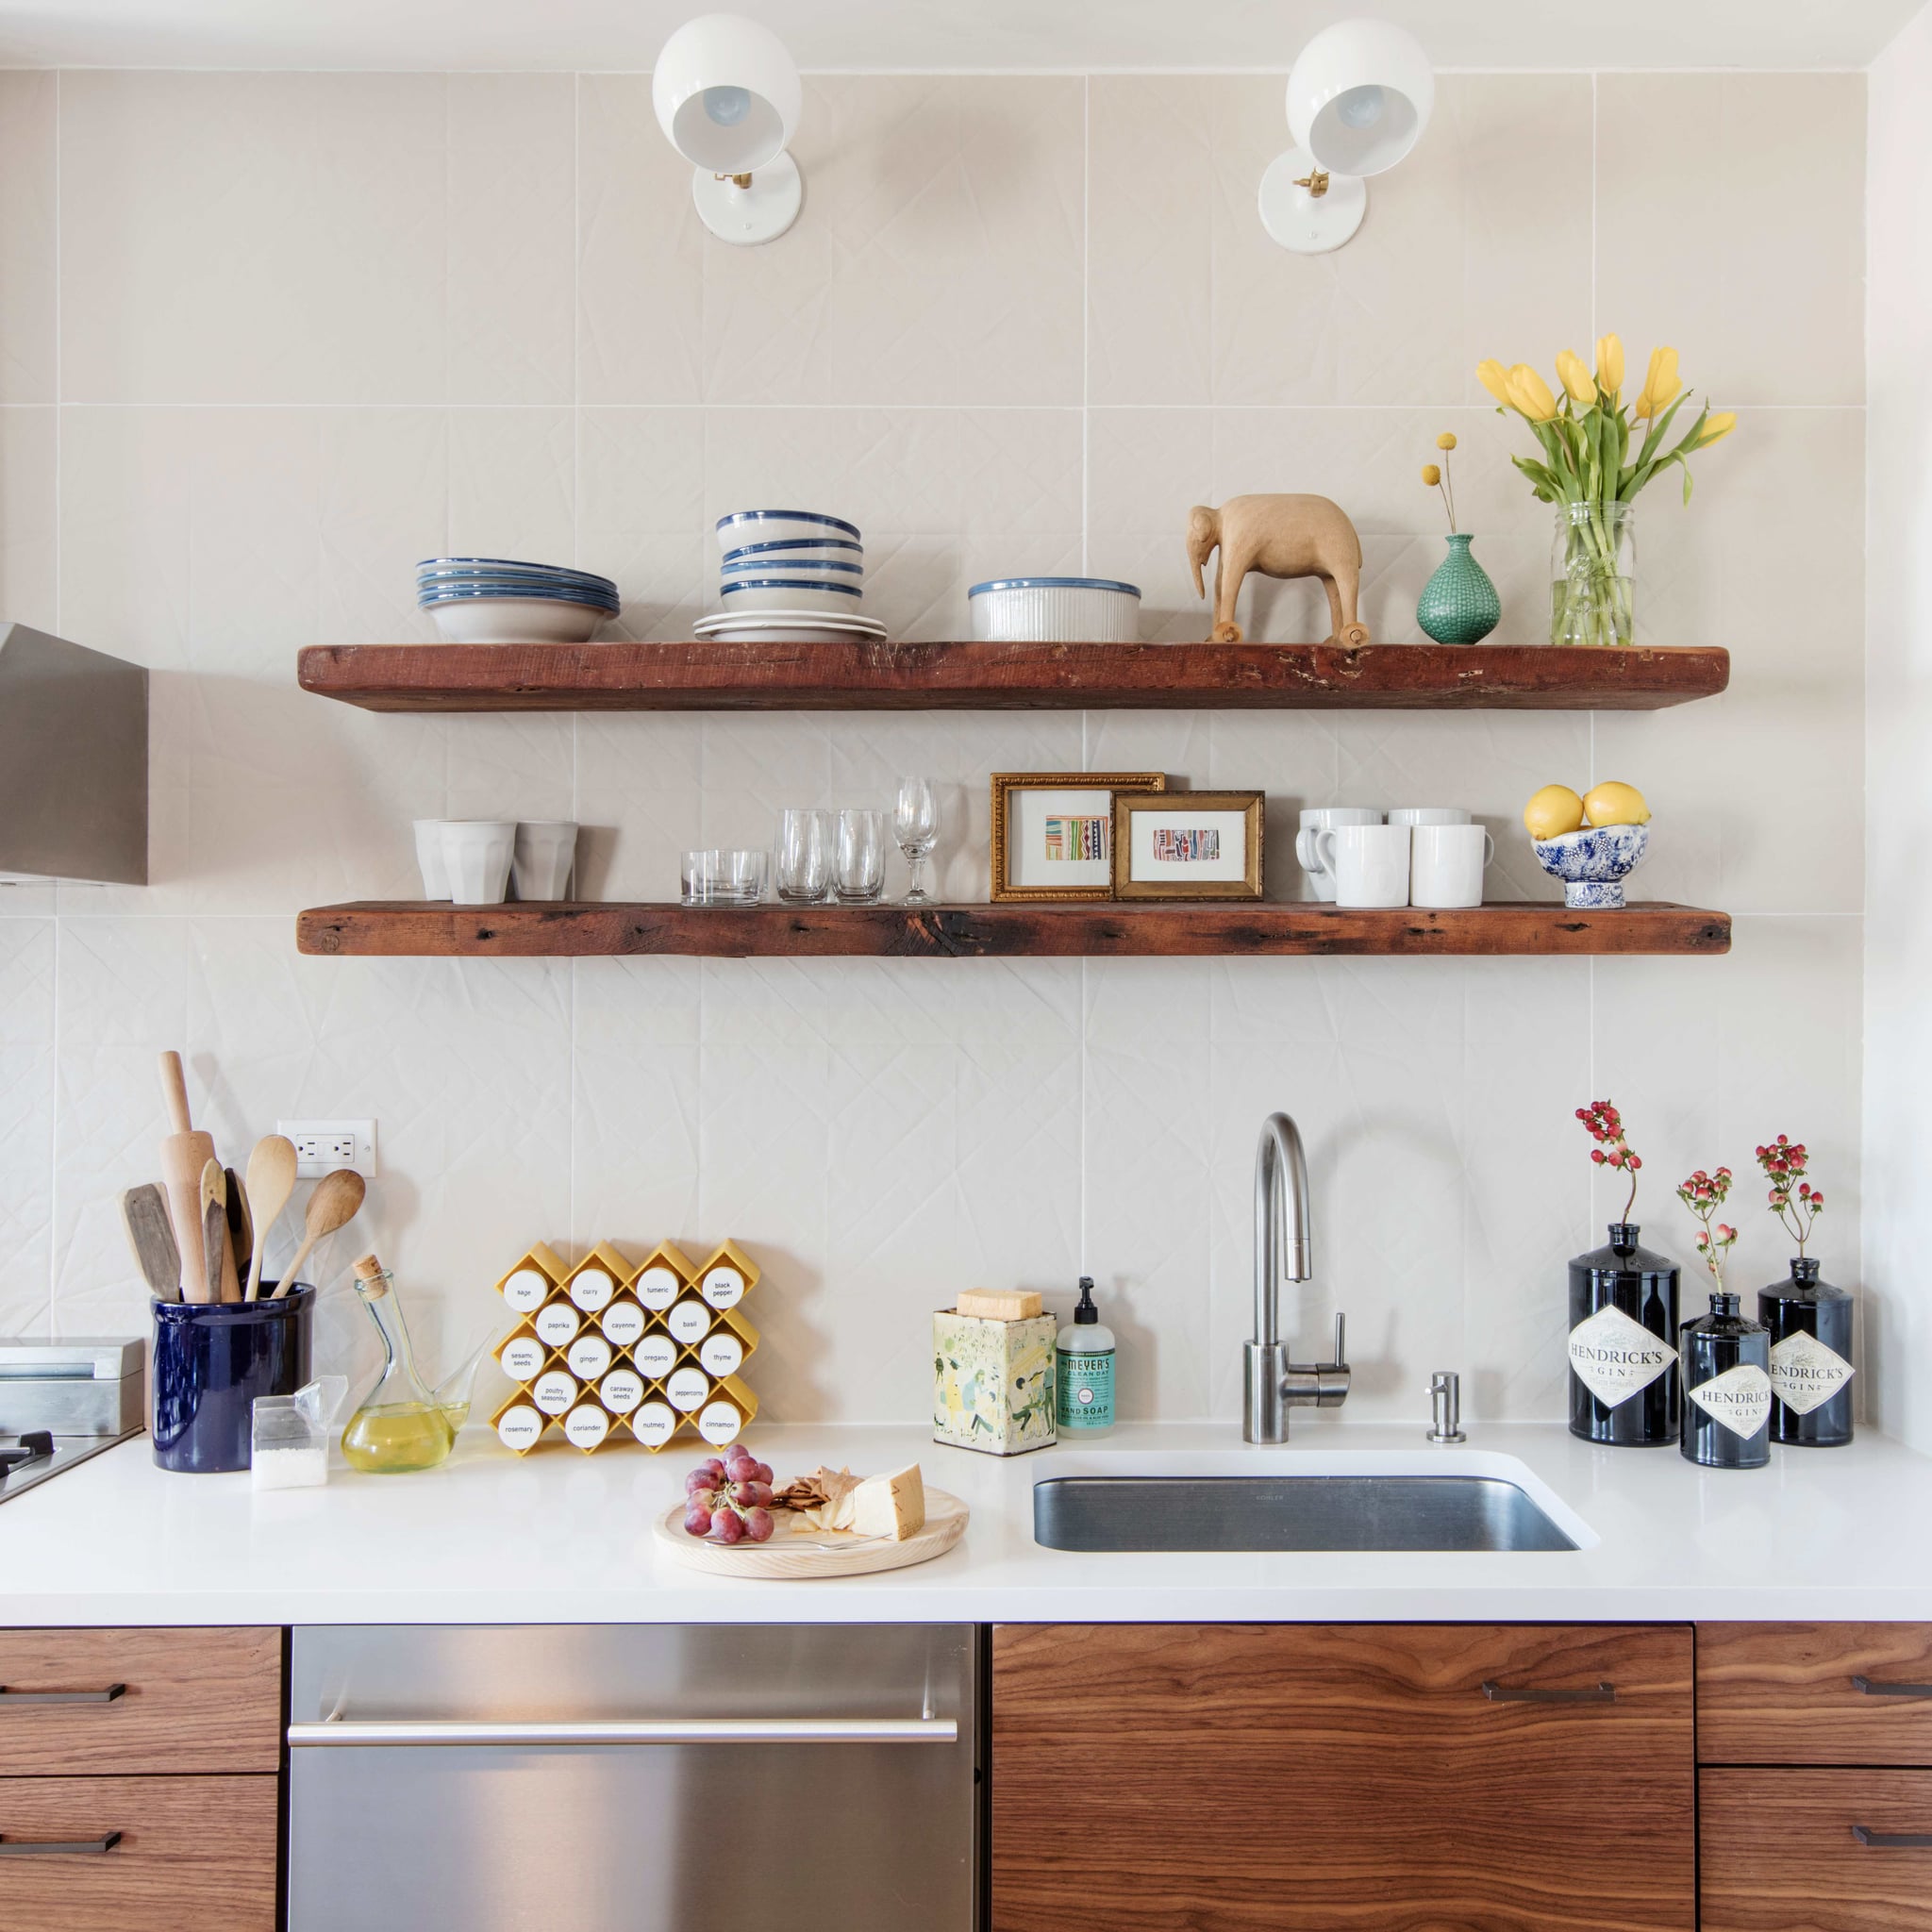 39+ Compact Kitchen Ideas Photos - House Decor Concept Ideas